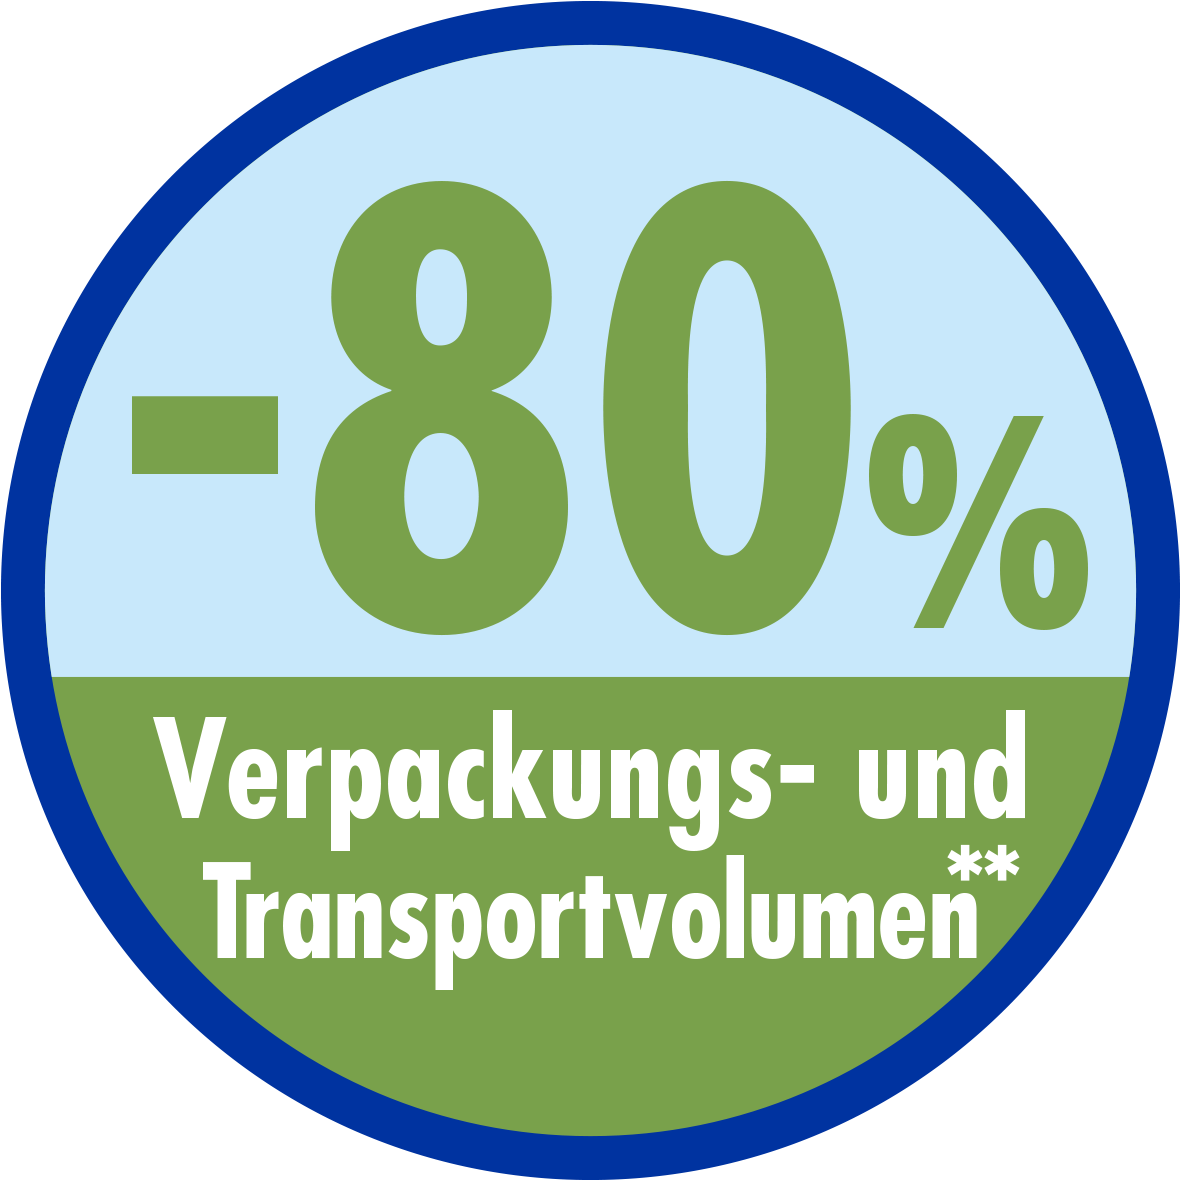 -80 % Verpackungs- und Transportvolumen